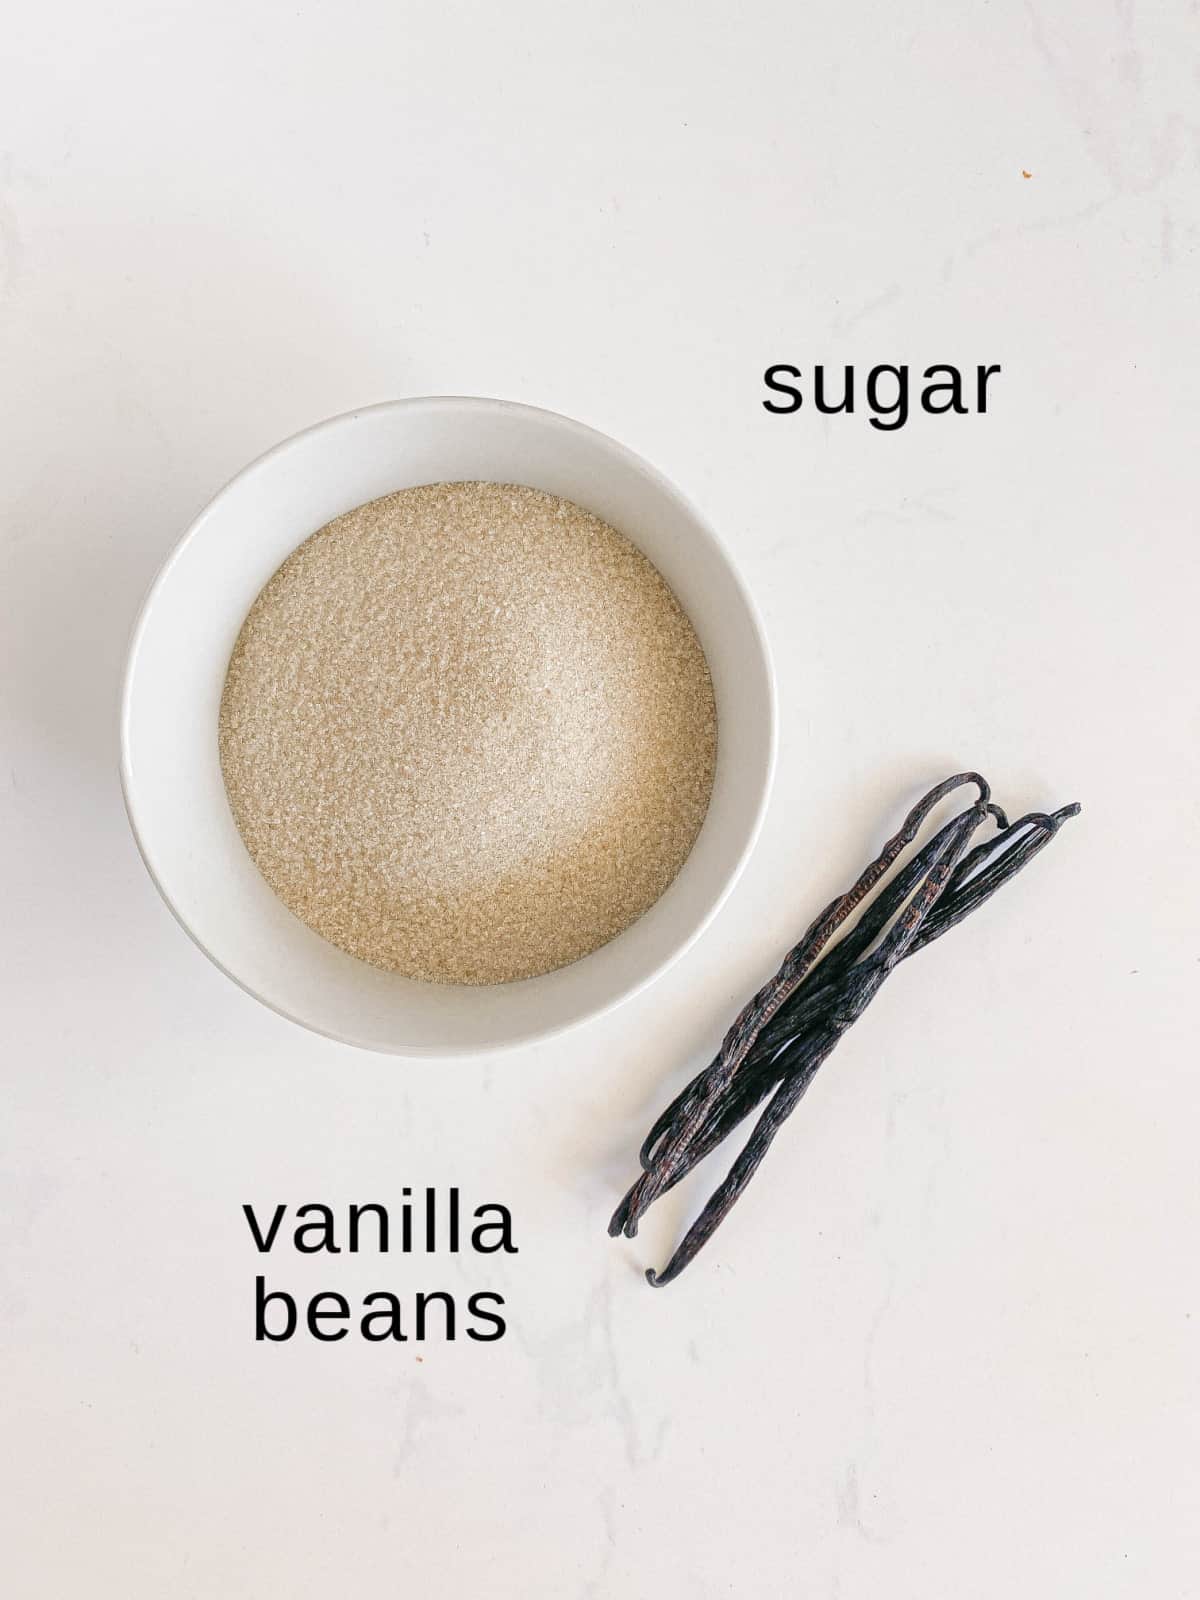 Vanilla Sugar ingredients on a white background.